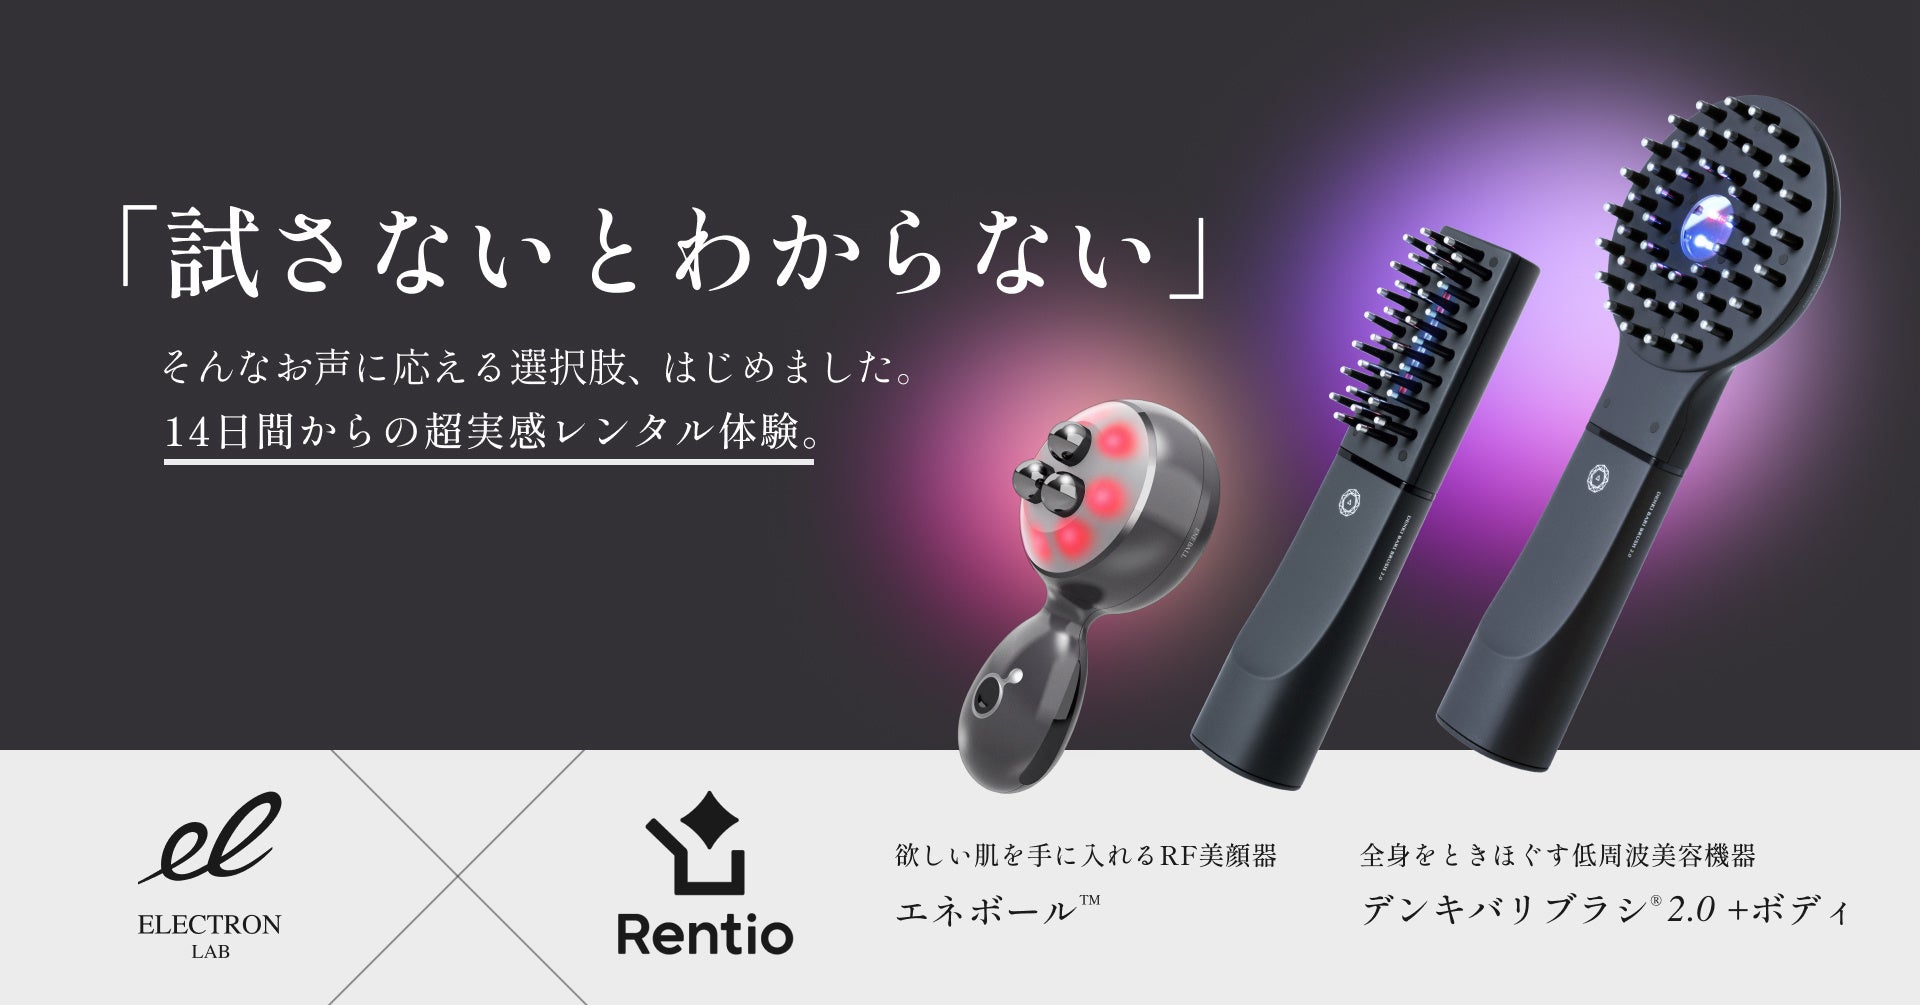 6月発売の新製品『エネボール™』もまずはお試し。「Rentio（レンティオ）」にて超実感レンタル体験をお届けします。